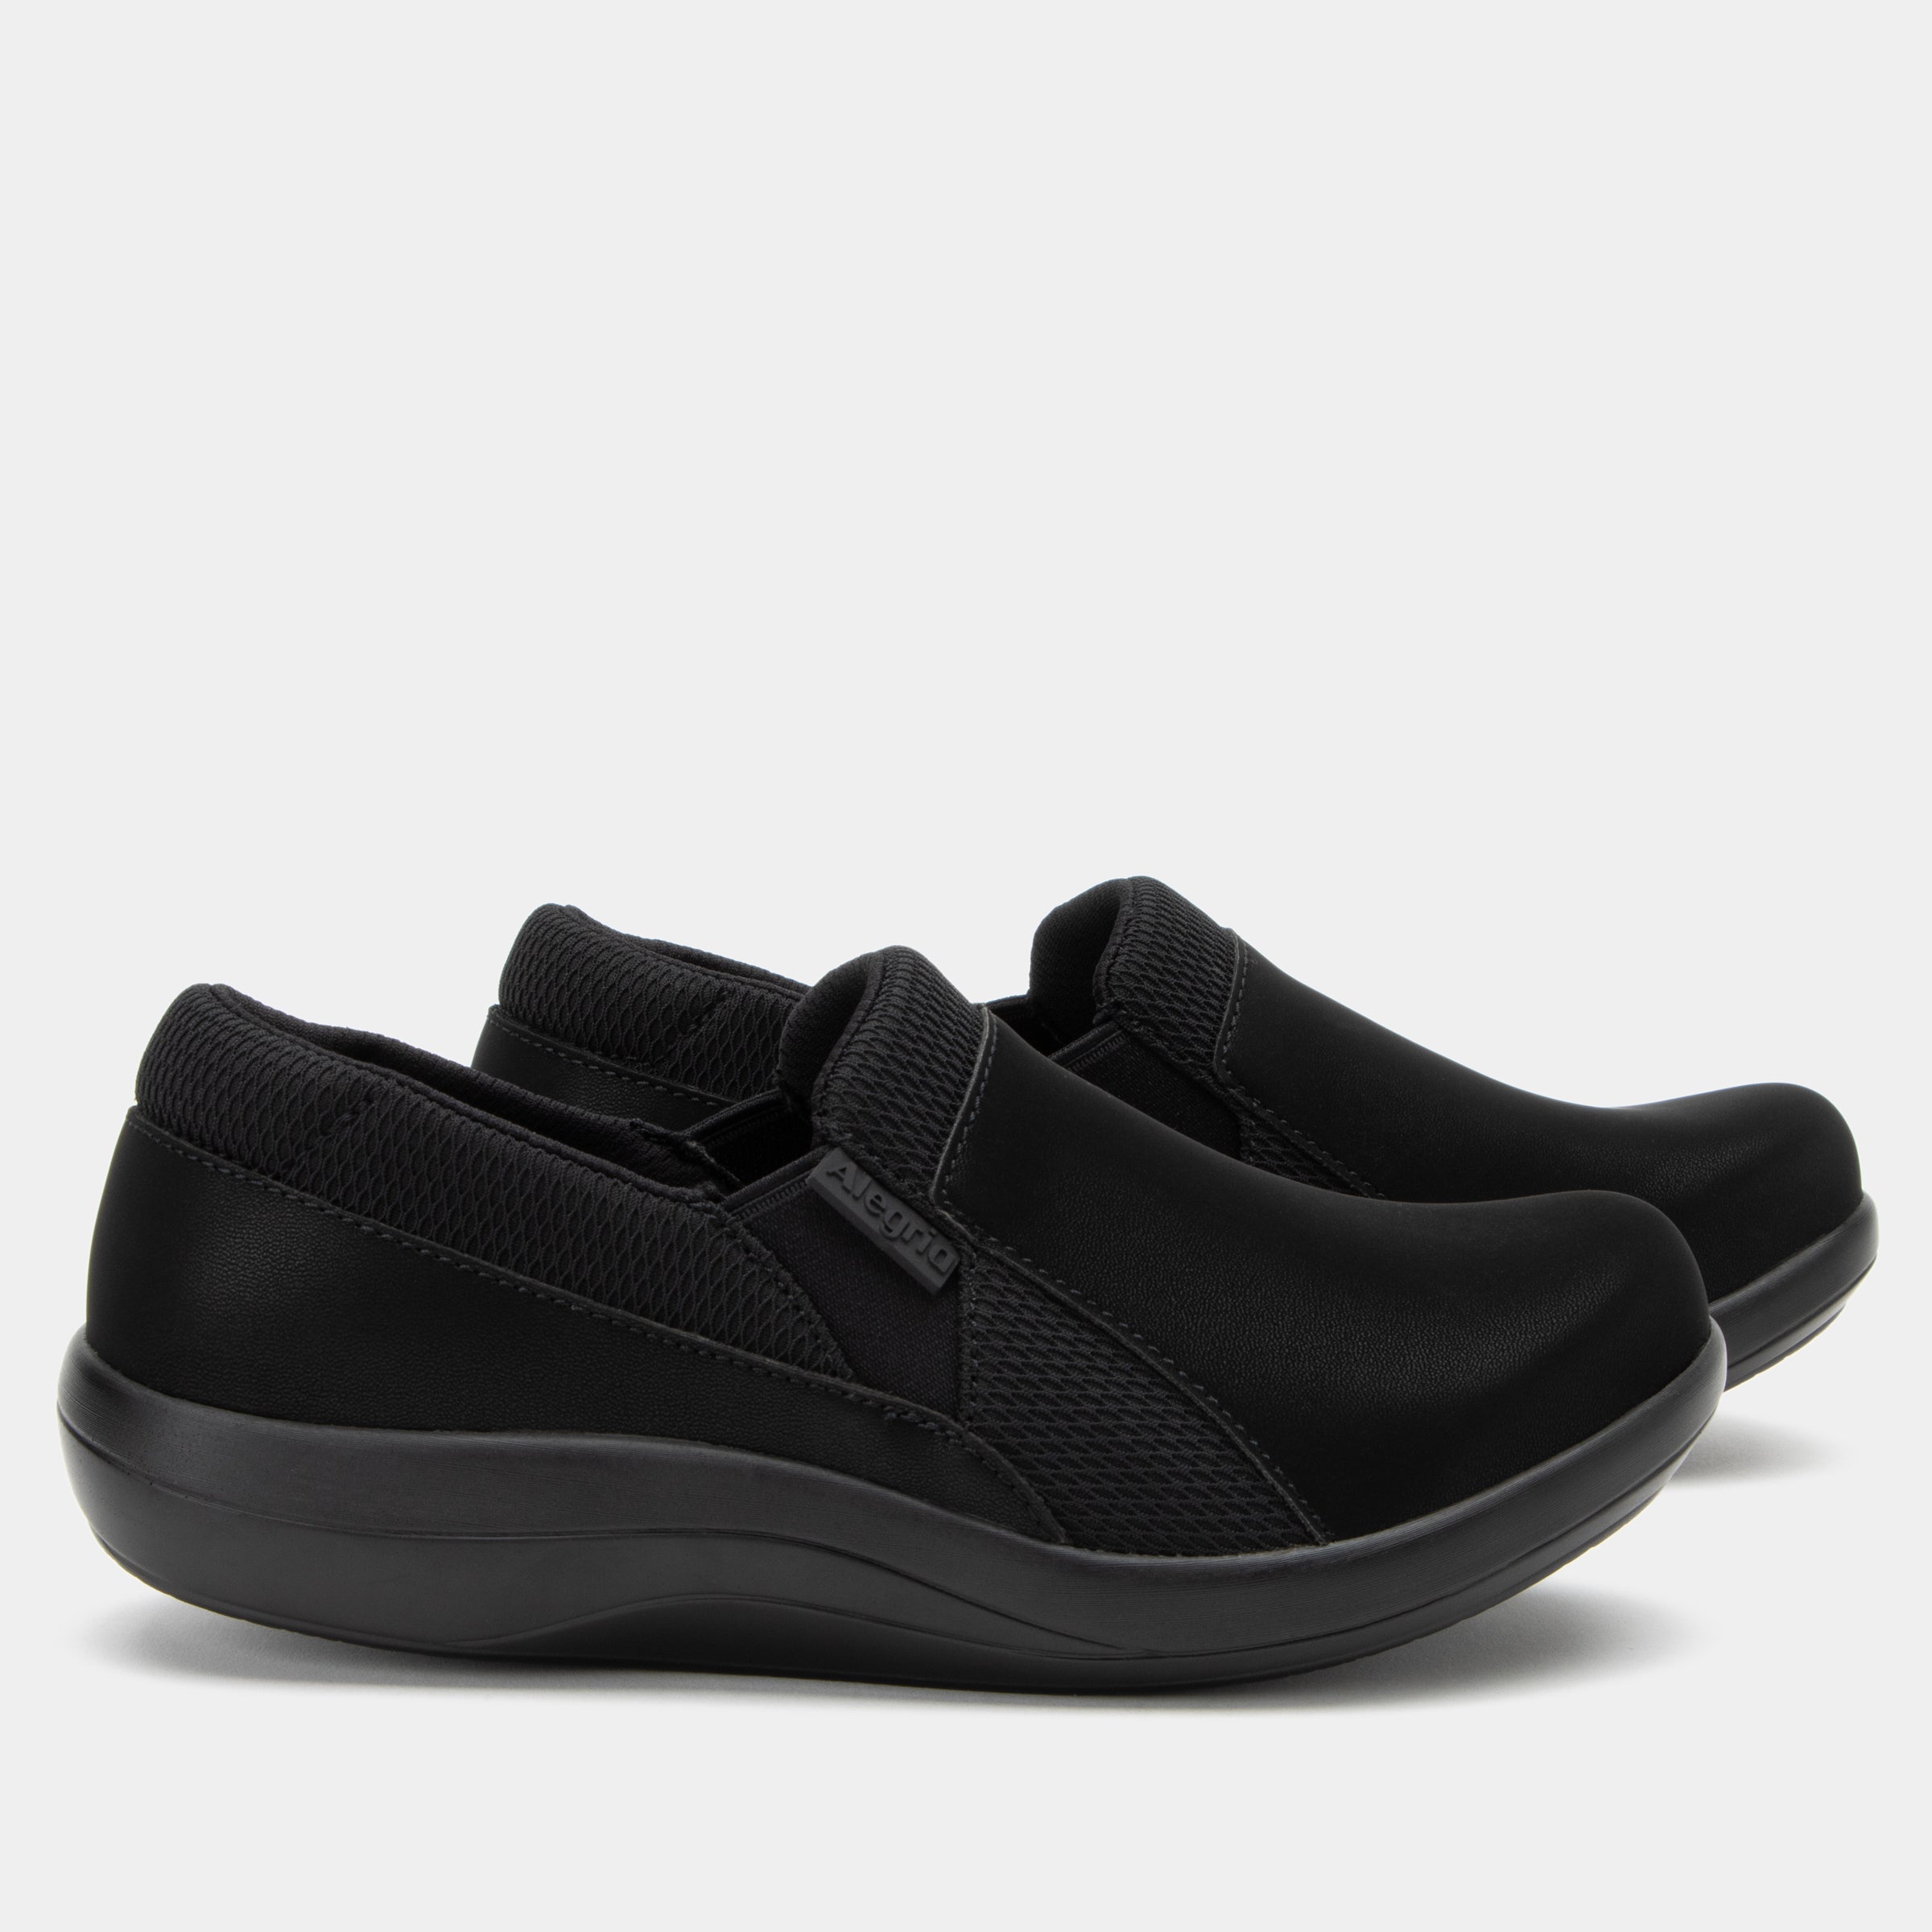 Duette Black Shoe - Alegria Shoes